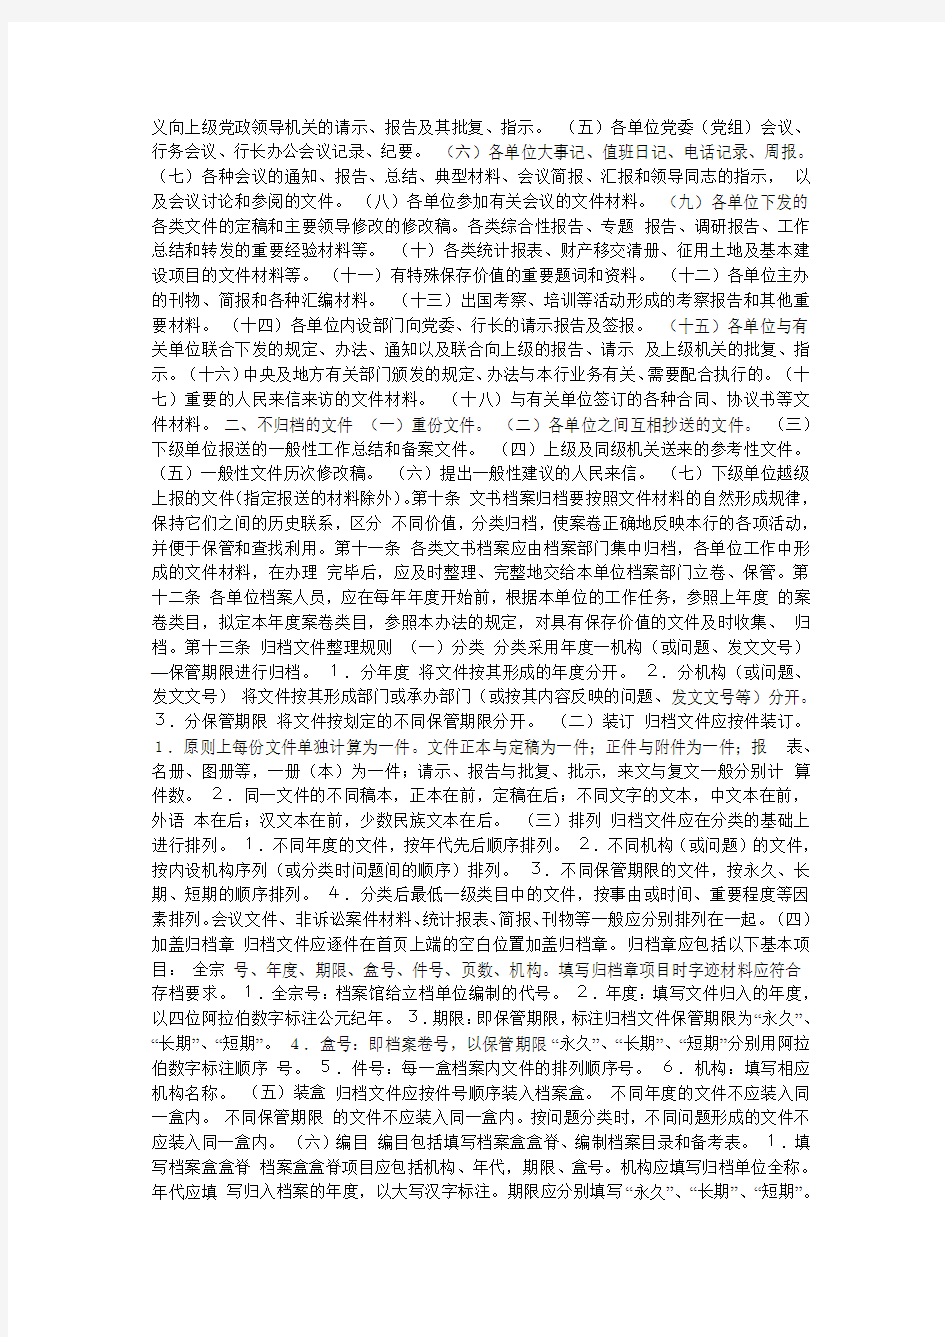 中国人民银行文书档案管理办法